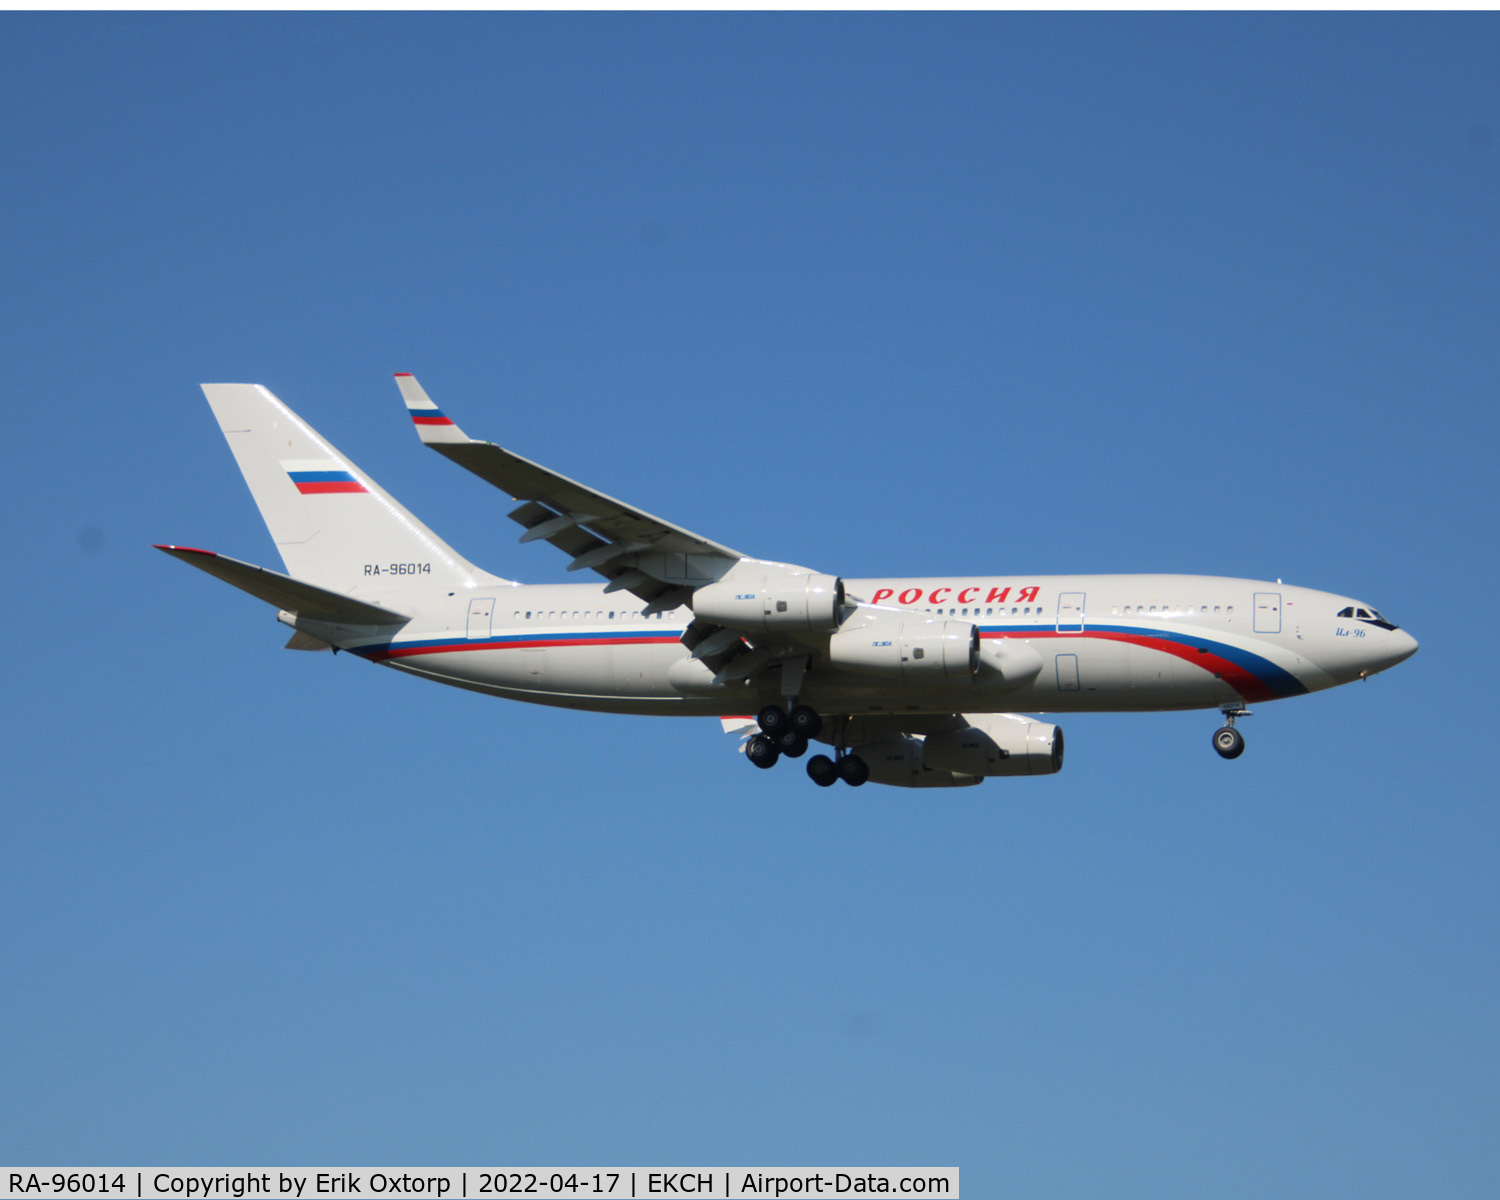 RA-96014, 2004 Ilyushin Il-96-300 C/N 74393202011, RA-96014 landing rw 04L